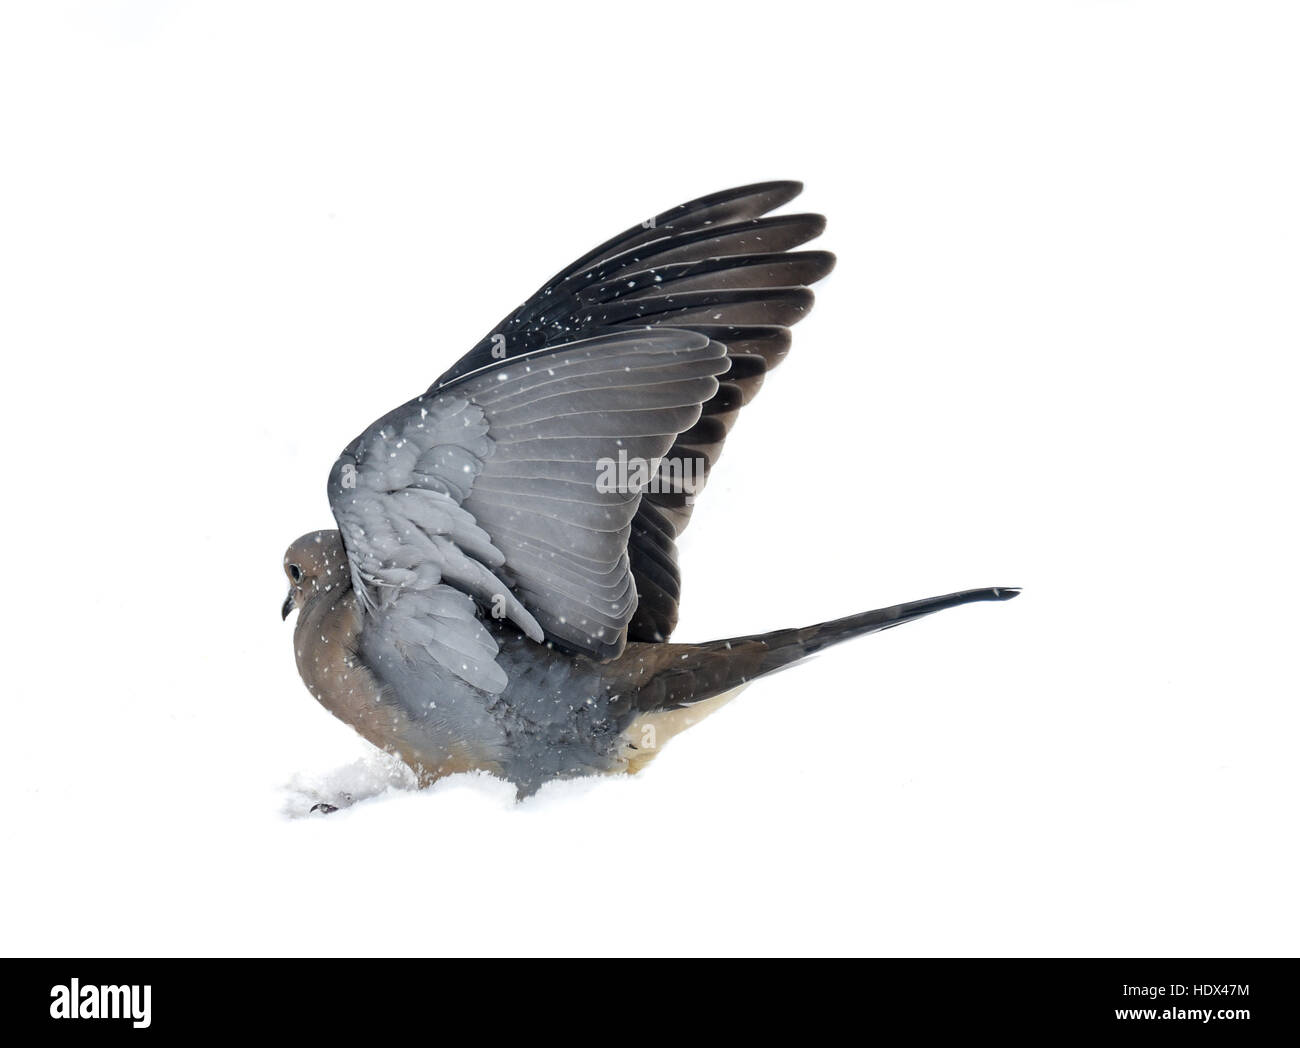 Ein friedliches Bild der Trauer Taube im Schnee mit Flügeln aufgehoben. Hintergrund ist weiß mit Taube mitten im Schnee. Stockfoto